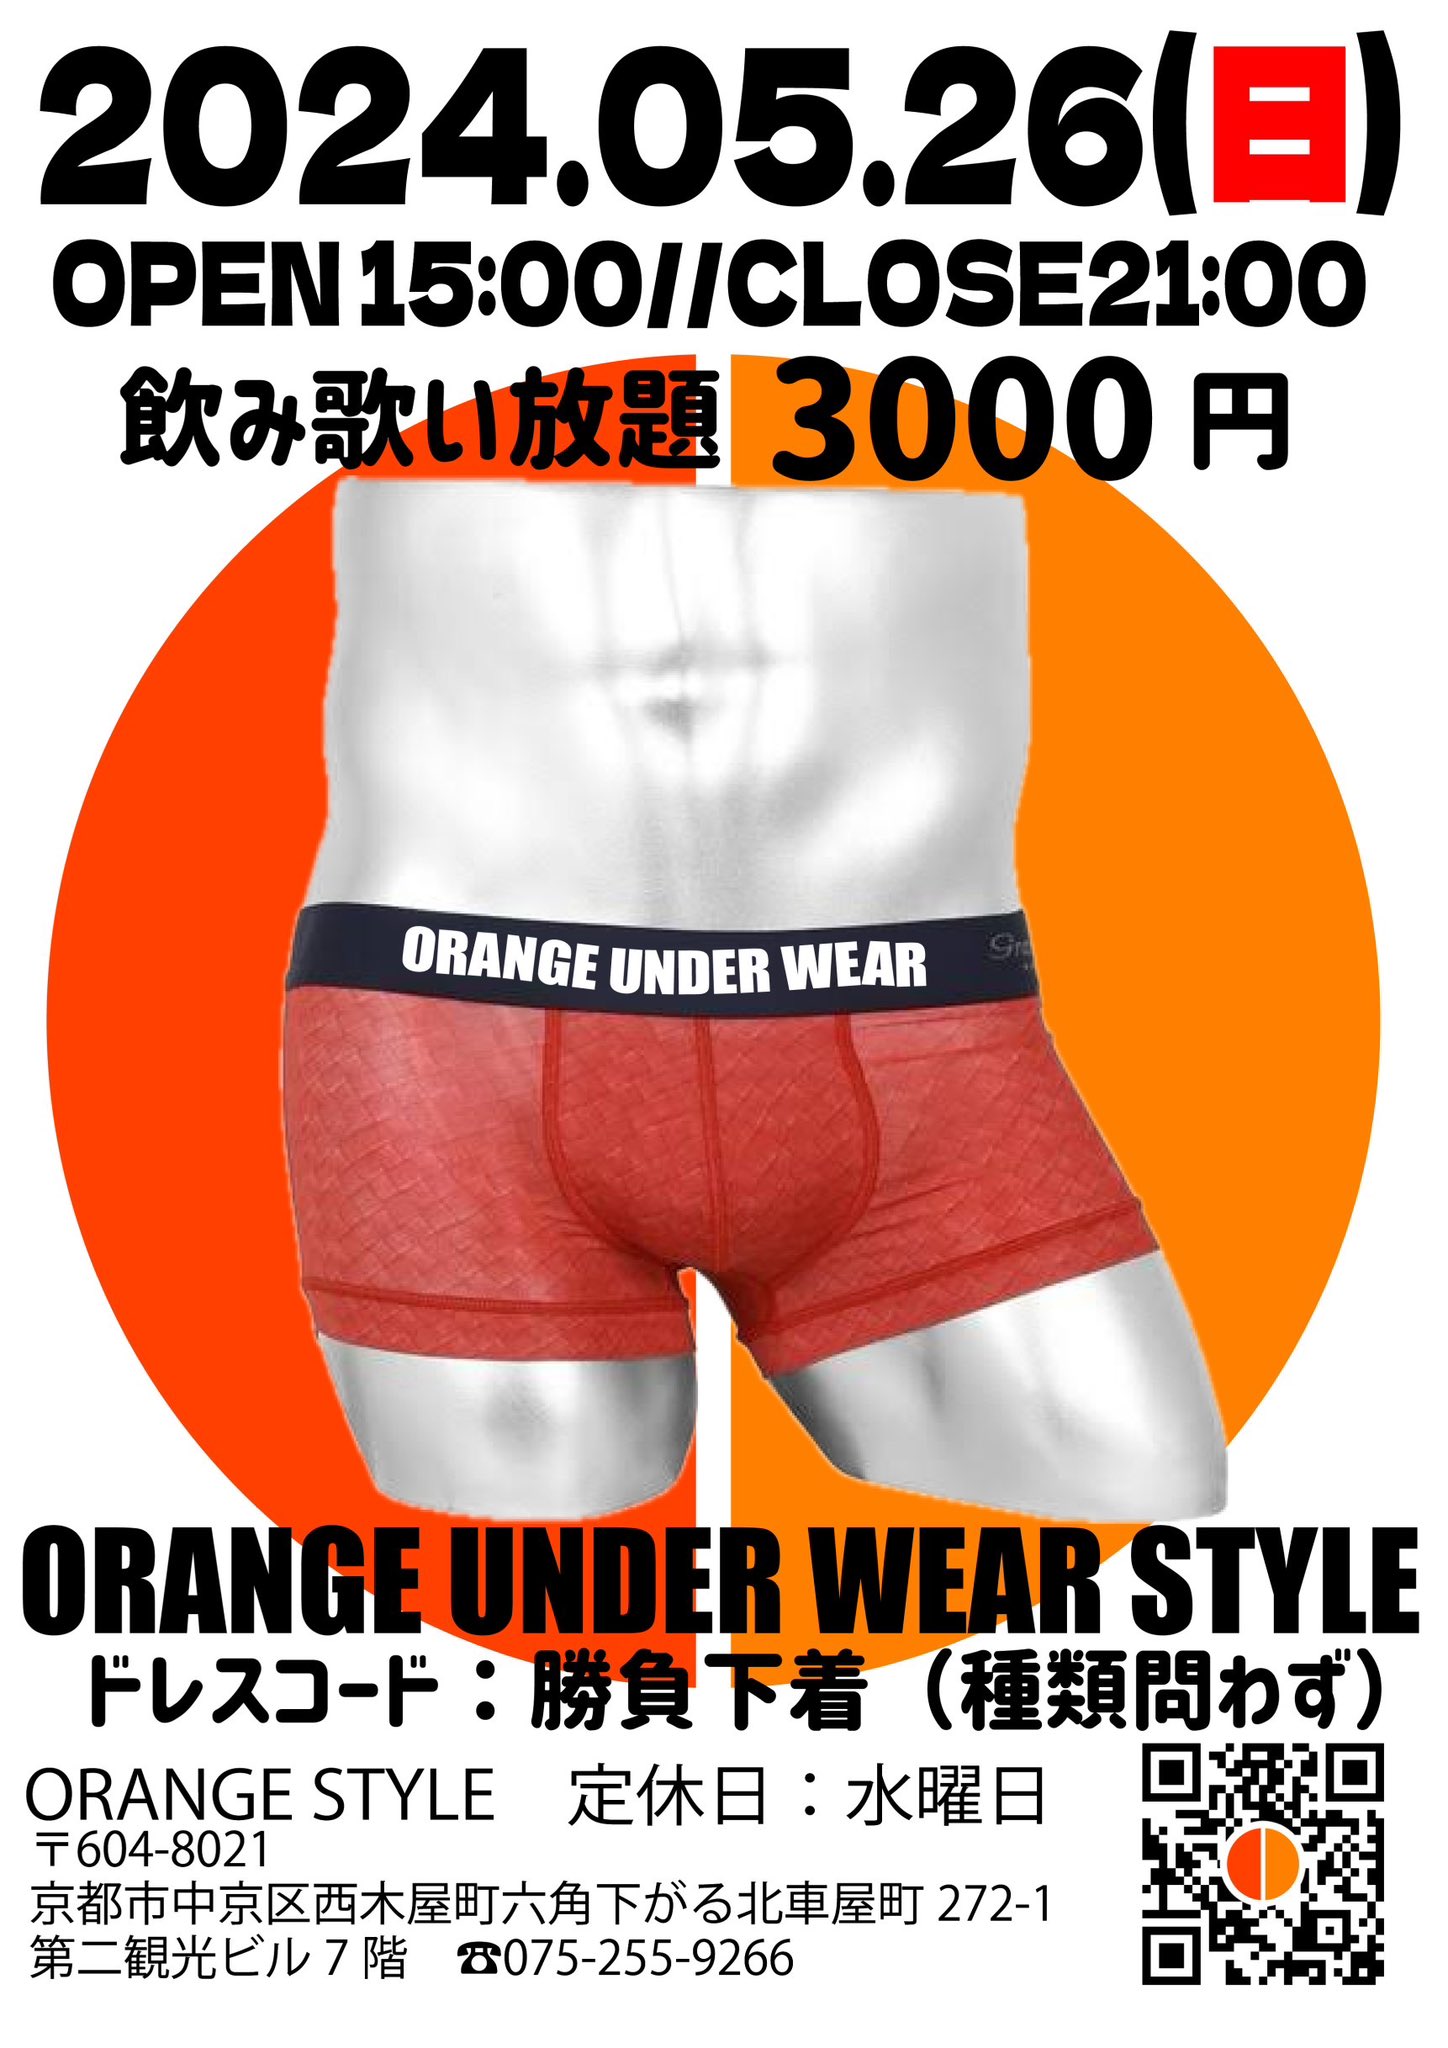 orange under wear style